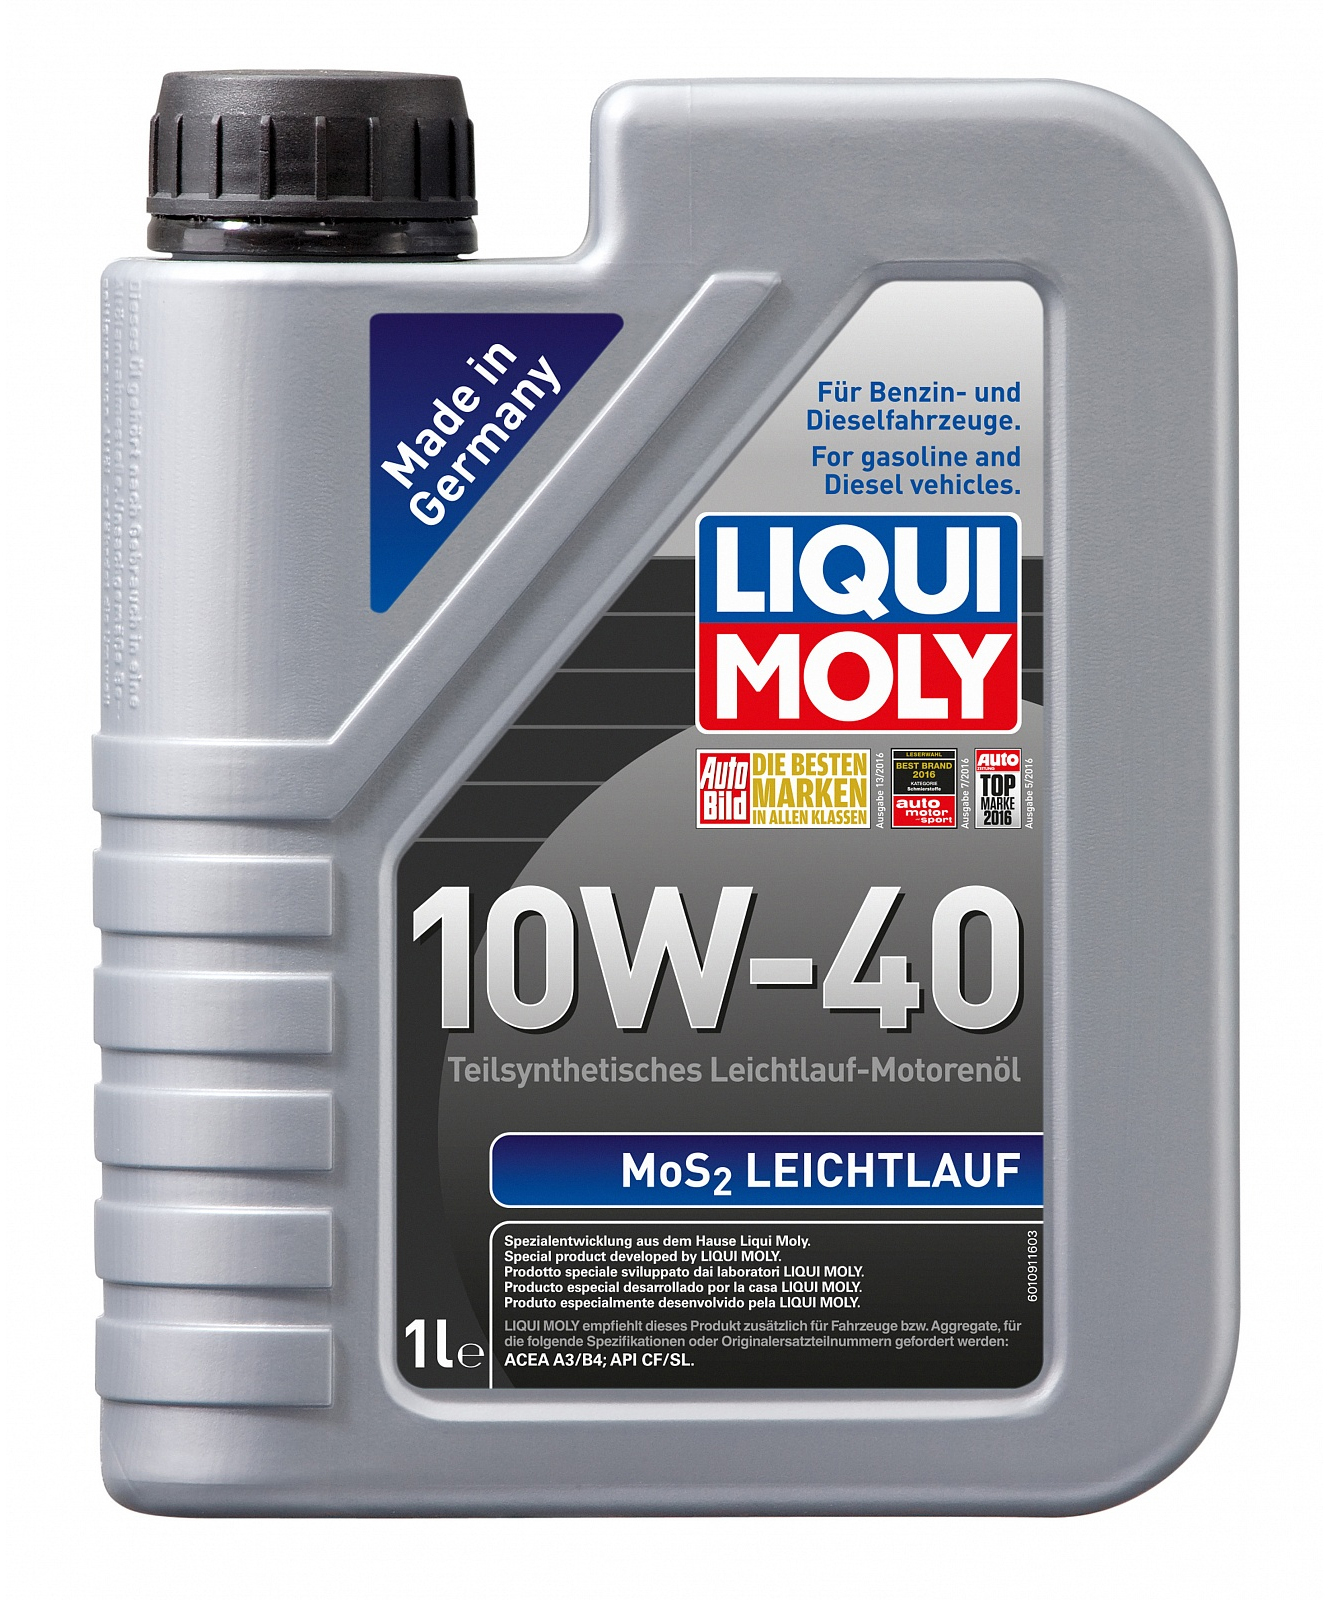 Купить моторное масло Liqui Moly MoS2 Leichtlauf 10W-40 1 л в Чернигове